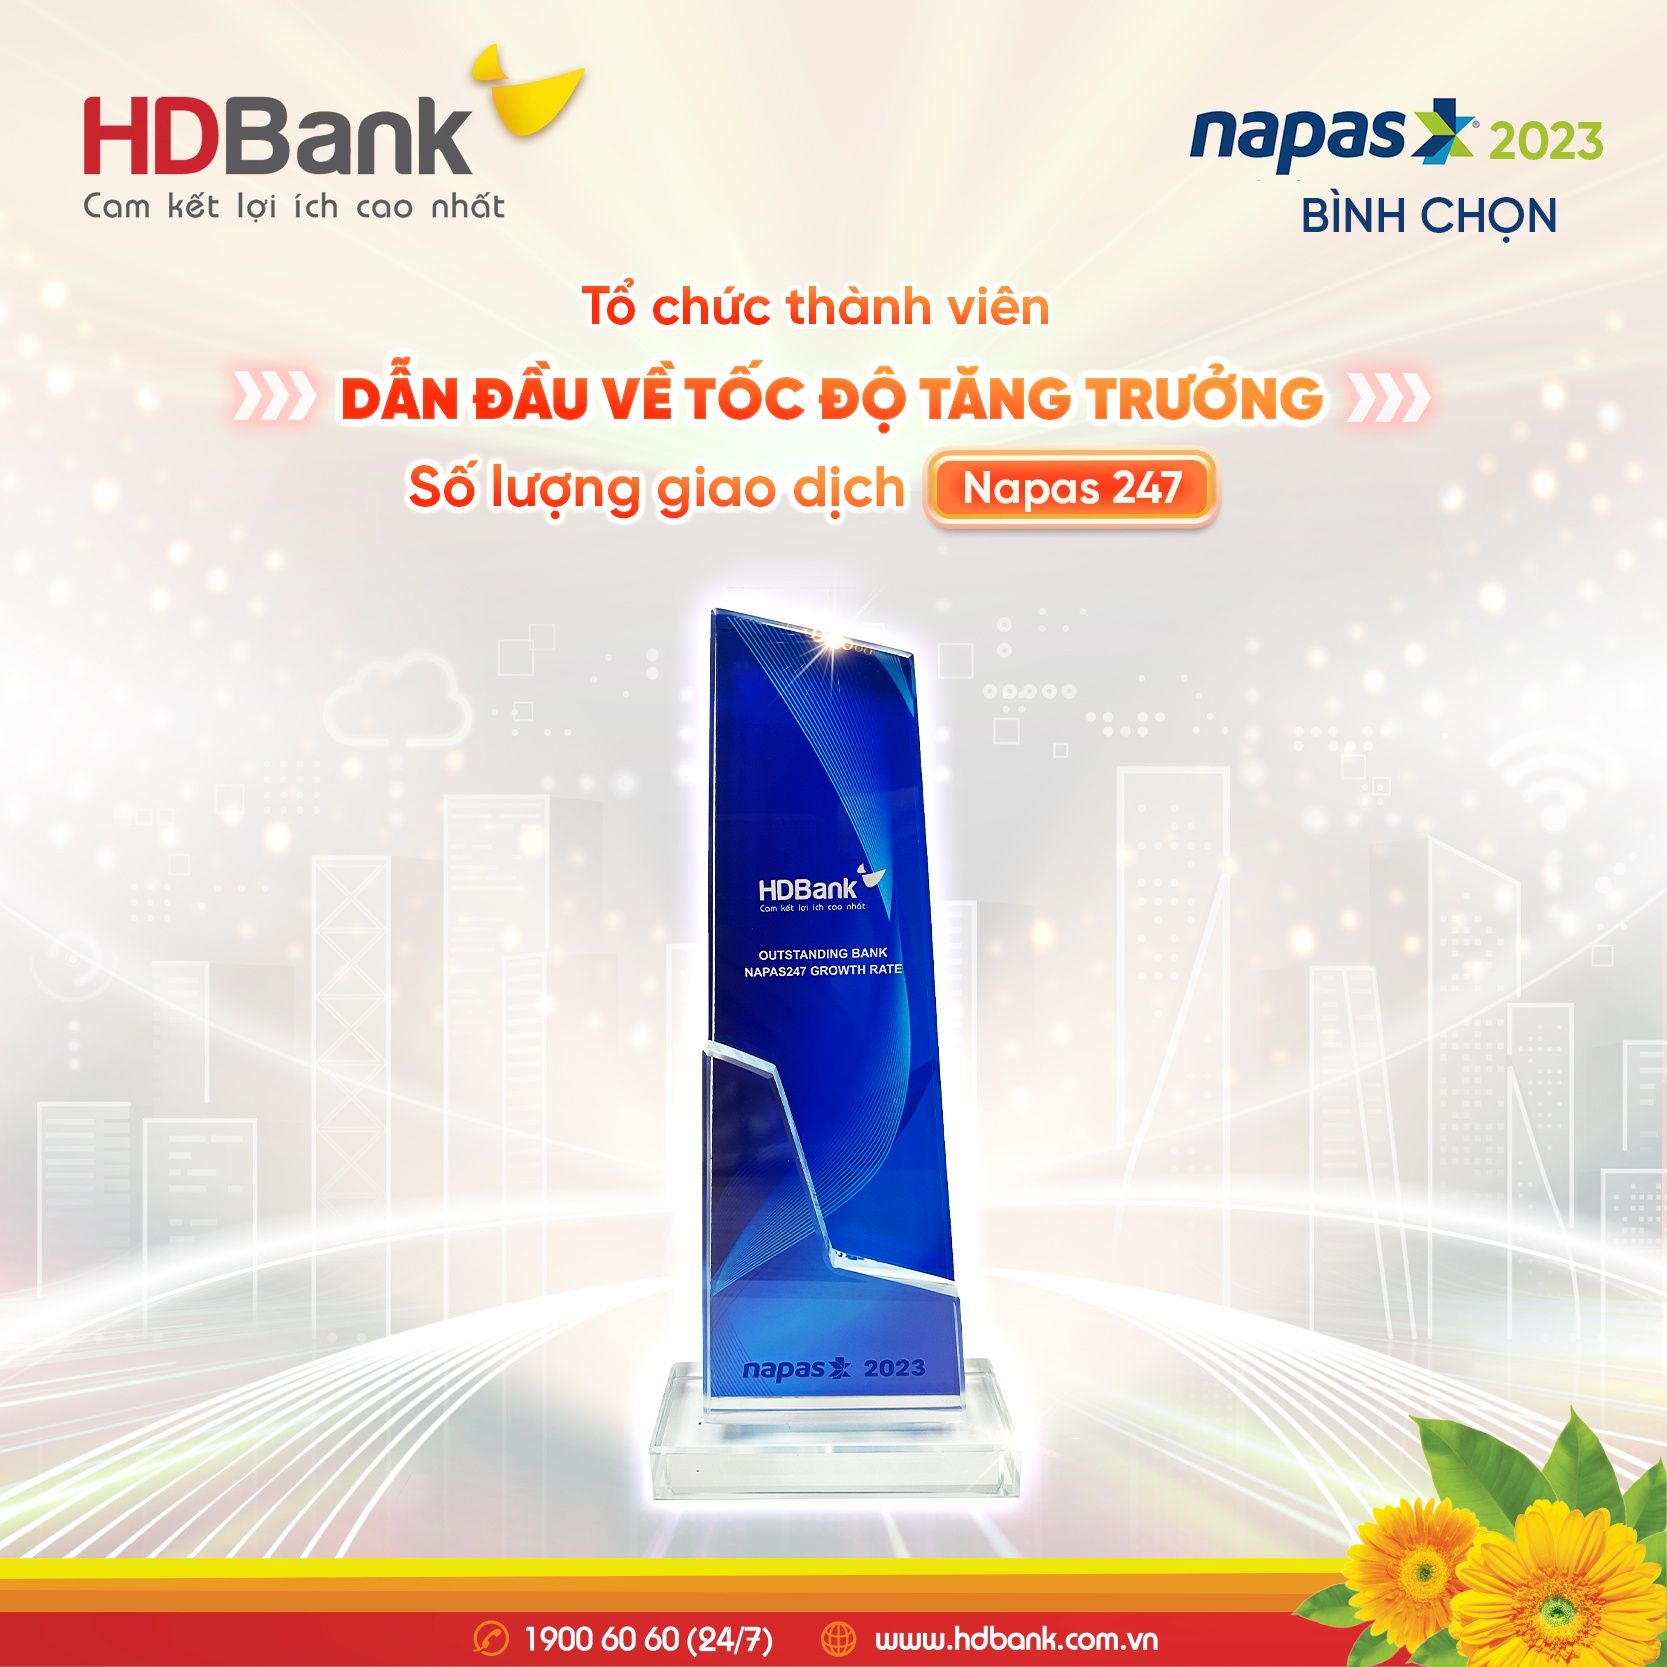 HDBank được vinh danh về tốc độ tăng trưởng giao dịch NAPAS 247